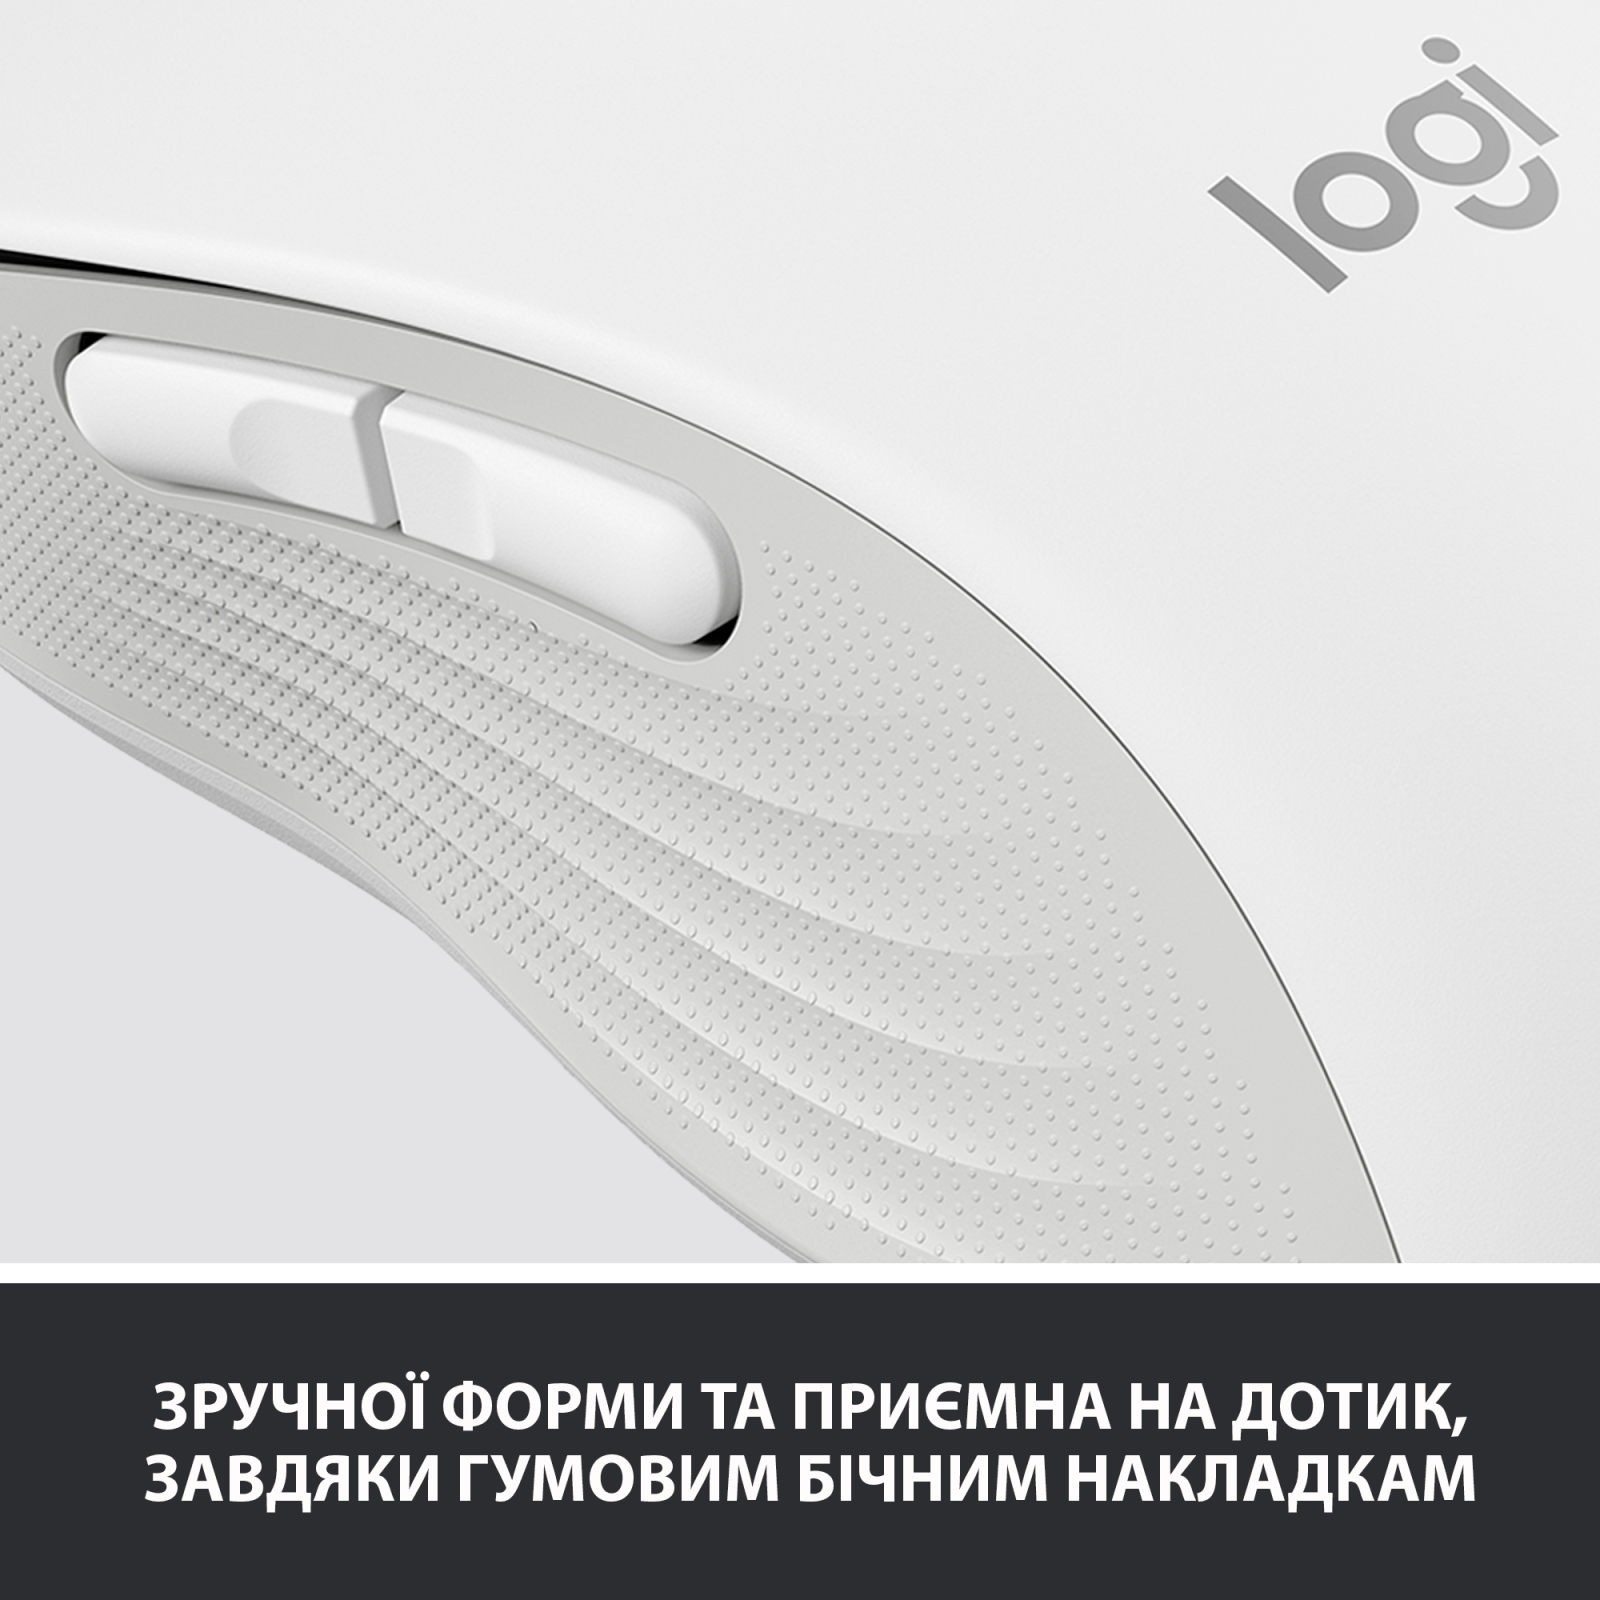 Мышка Logitech Signature M650 Wireless Off-White (910-006255) изображение 7